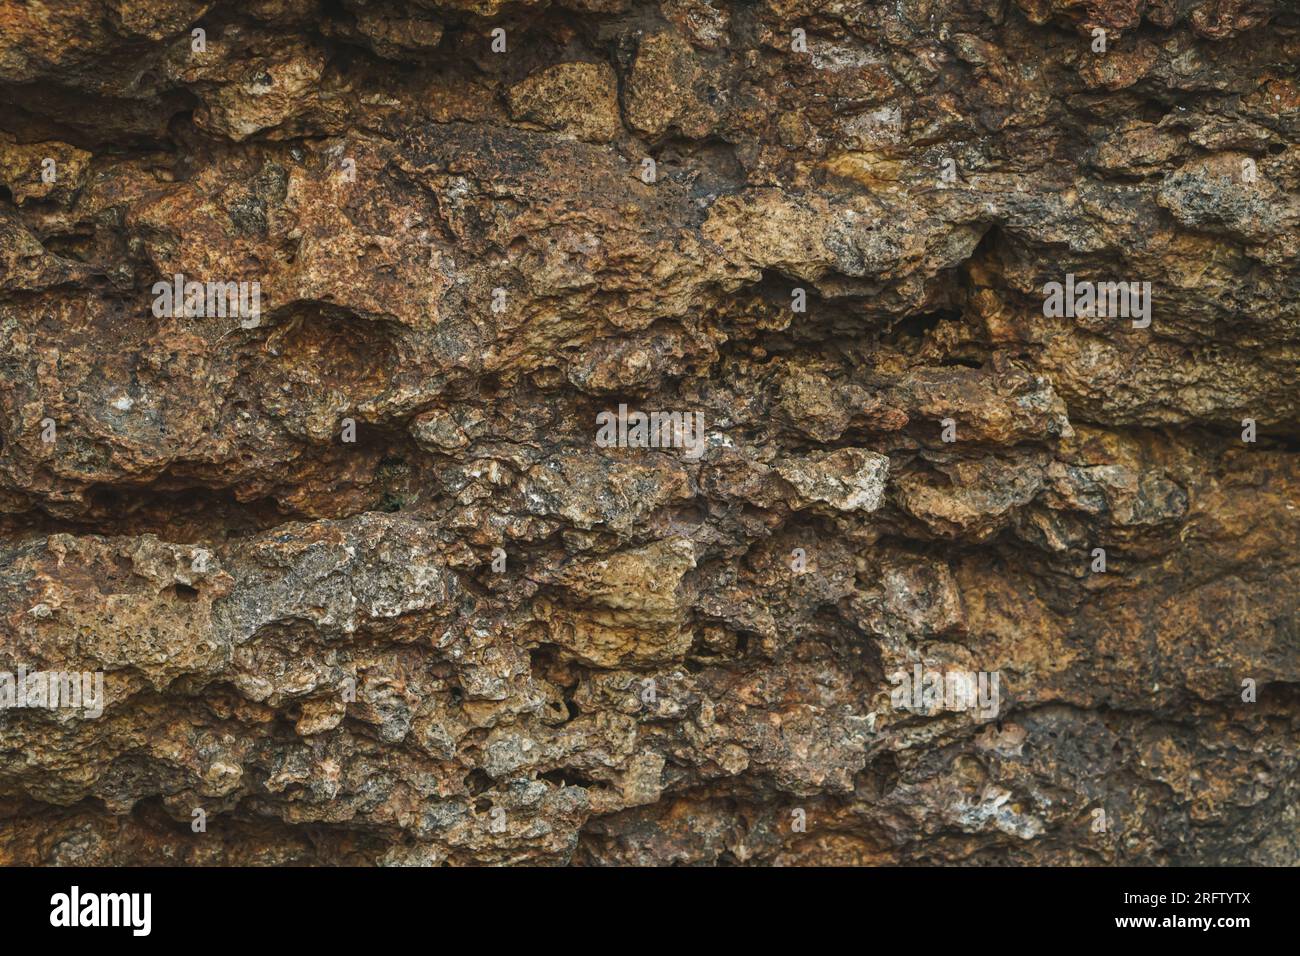 Sfondo di pietra, parete di roccia sullo sfondo con tessitura grossolana. Abstract, grungy e superficie testurizzata del materiale lapideo. La natura particolare delle rocce. Foto Stock